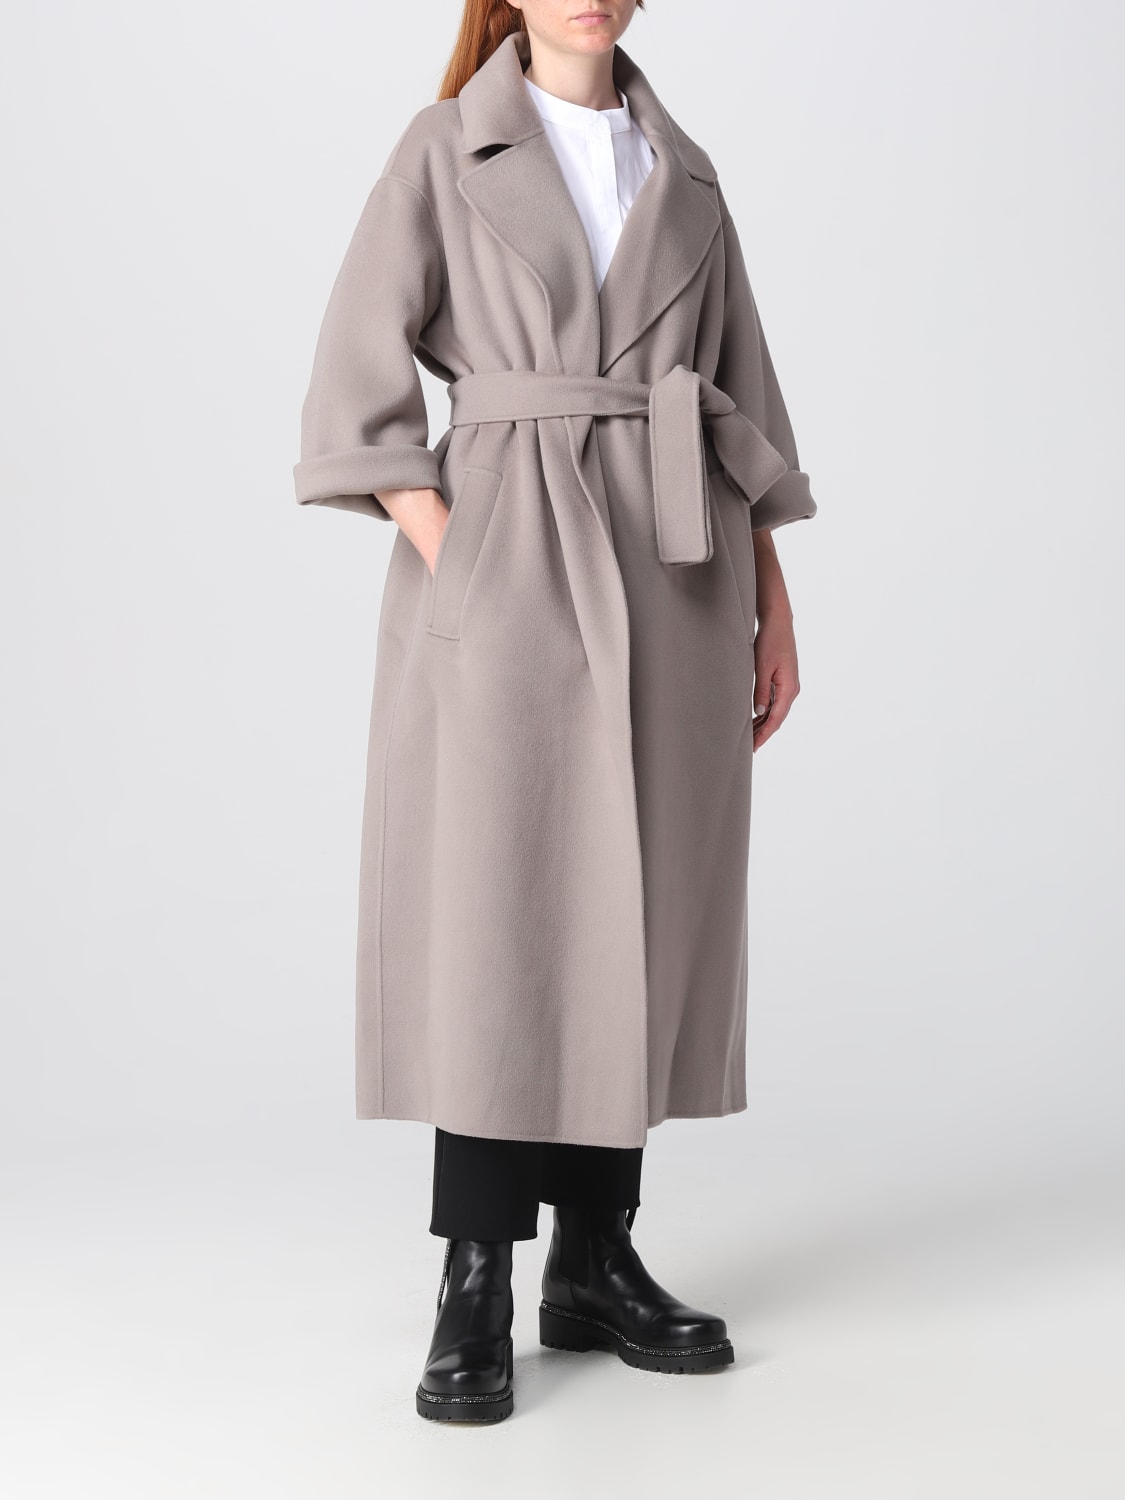 'S MAX MARA: S Max Mara Venice coat in wool - Grey | 'S Max Mara coat ...